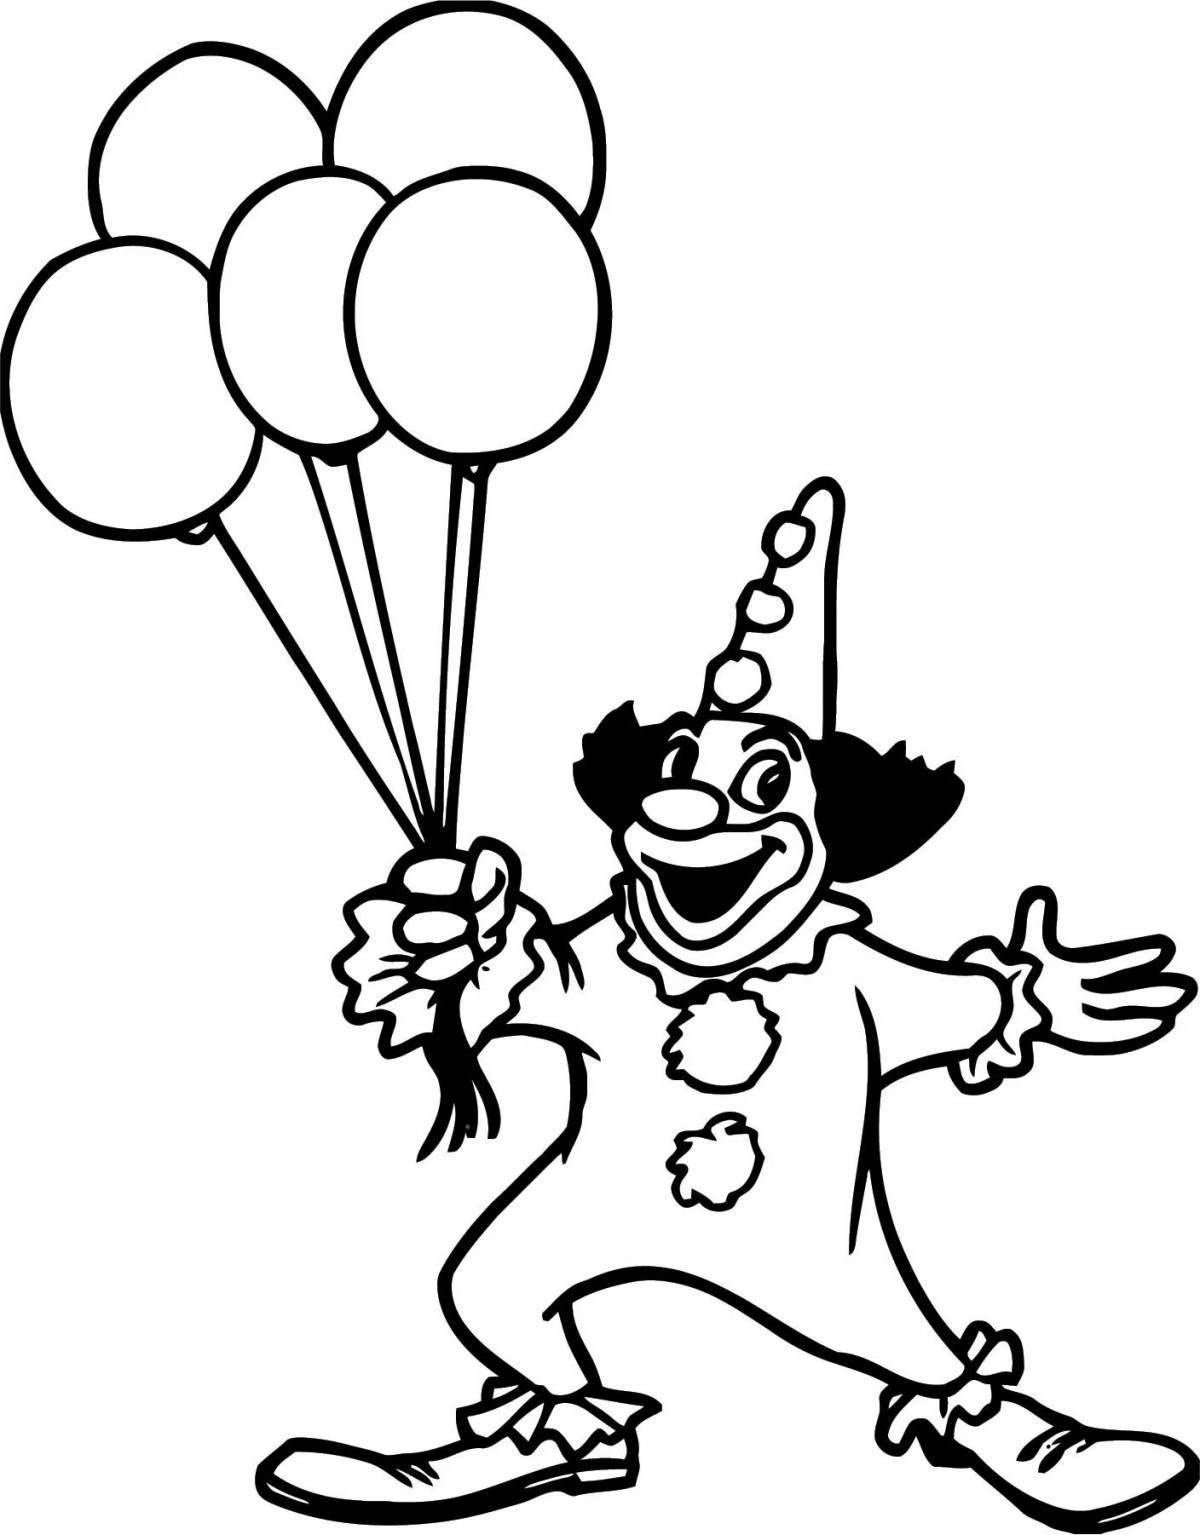 Ликующий клоун с воздушными шарами